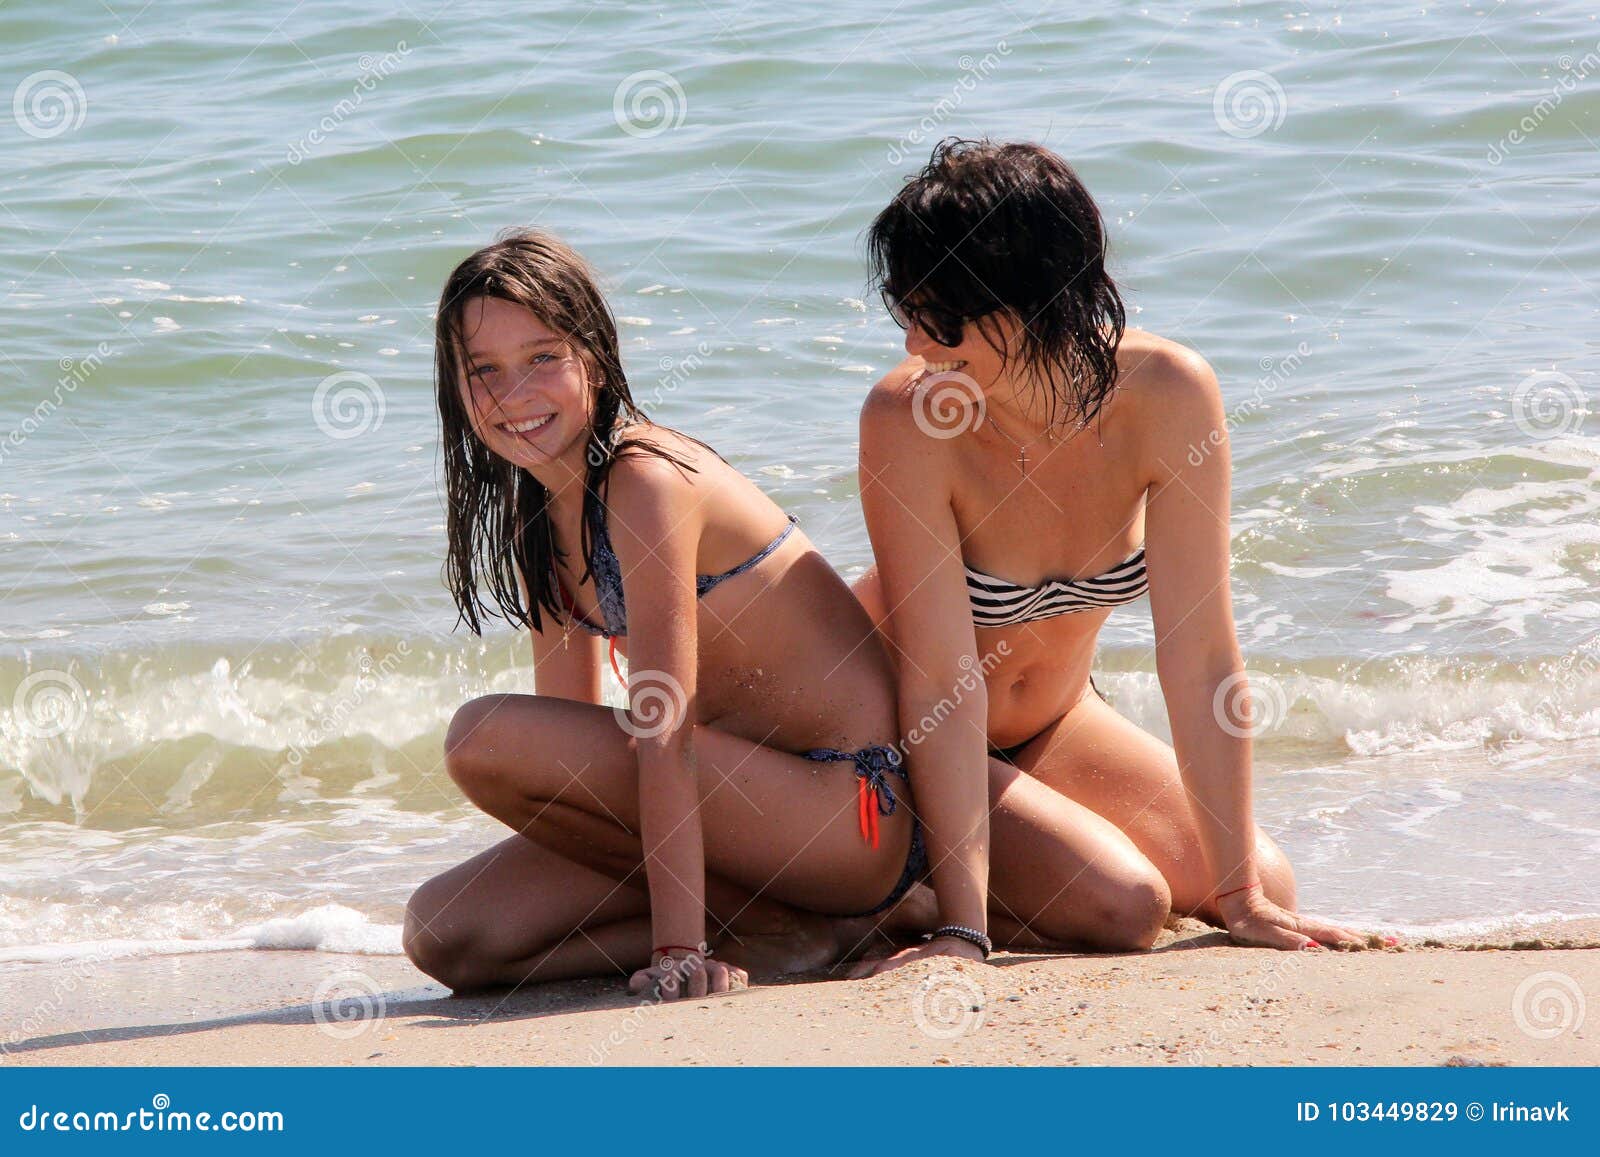 clirim dauti share mom daughter nude beach photos